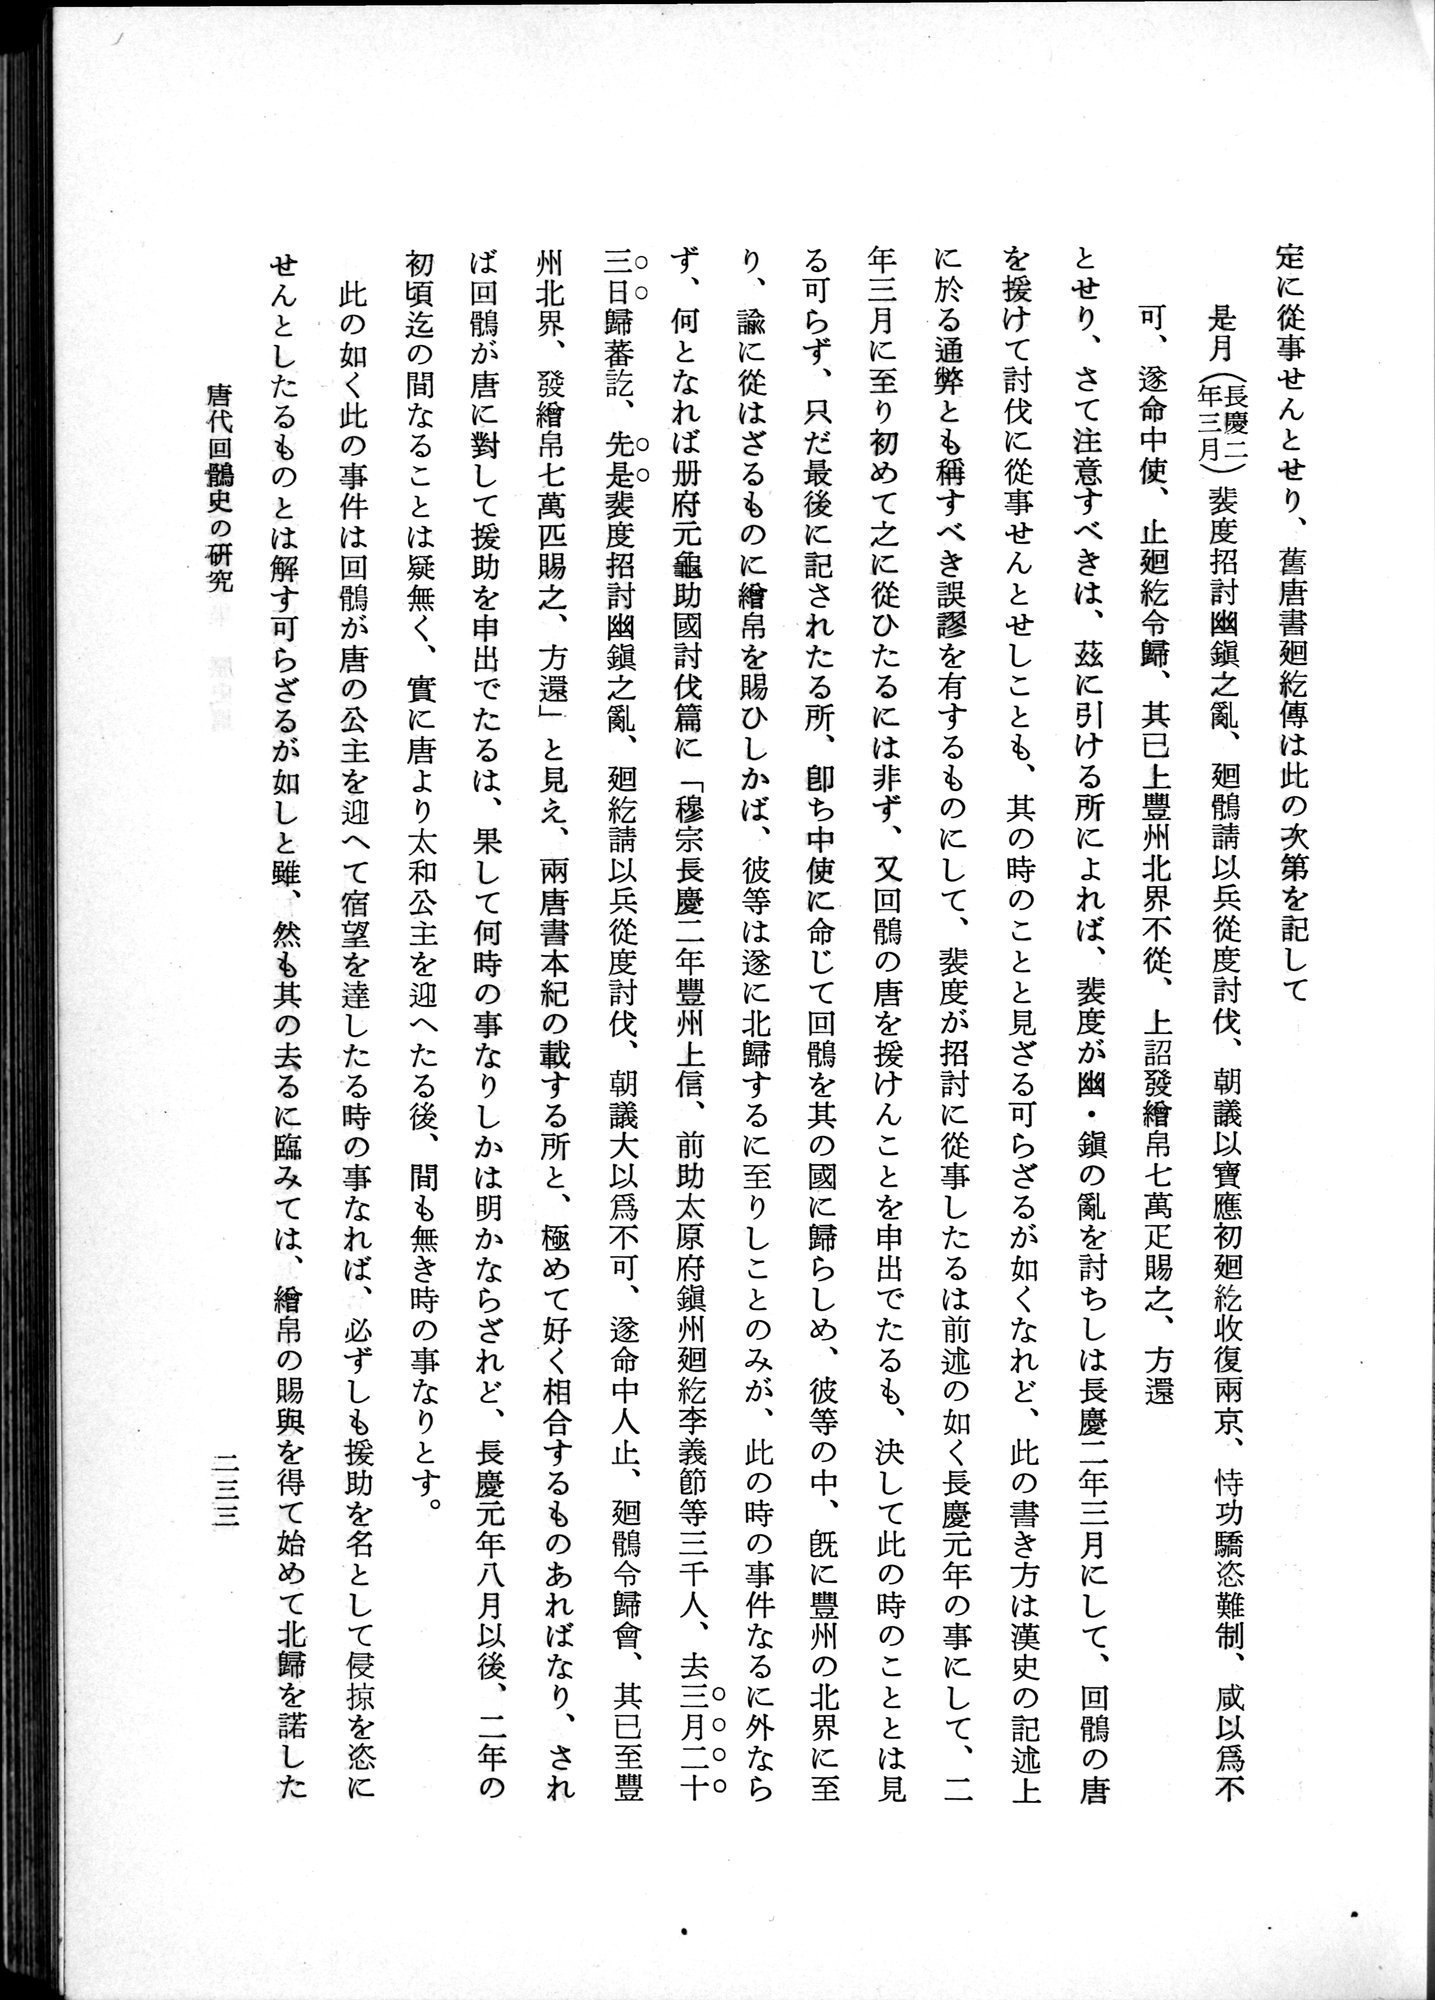 羽田博士史学論文集 : vol.1 / Page 271 (Grayscale High Resolution Image)